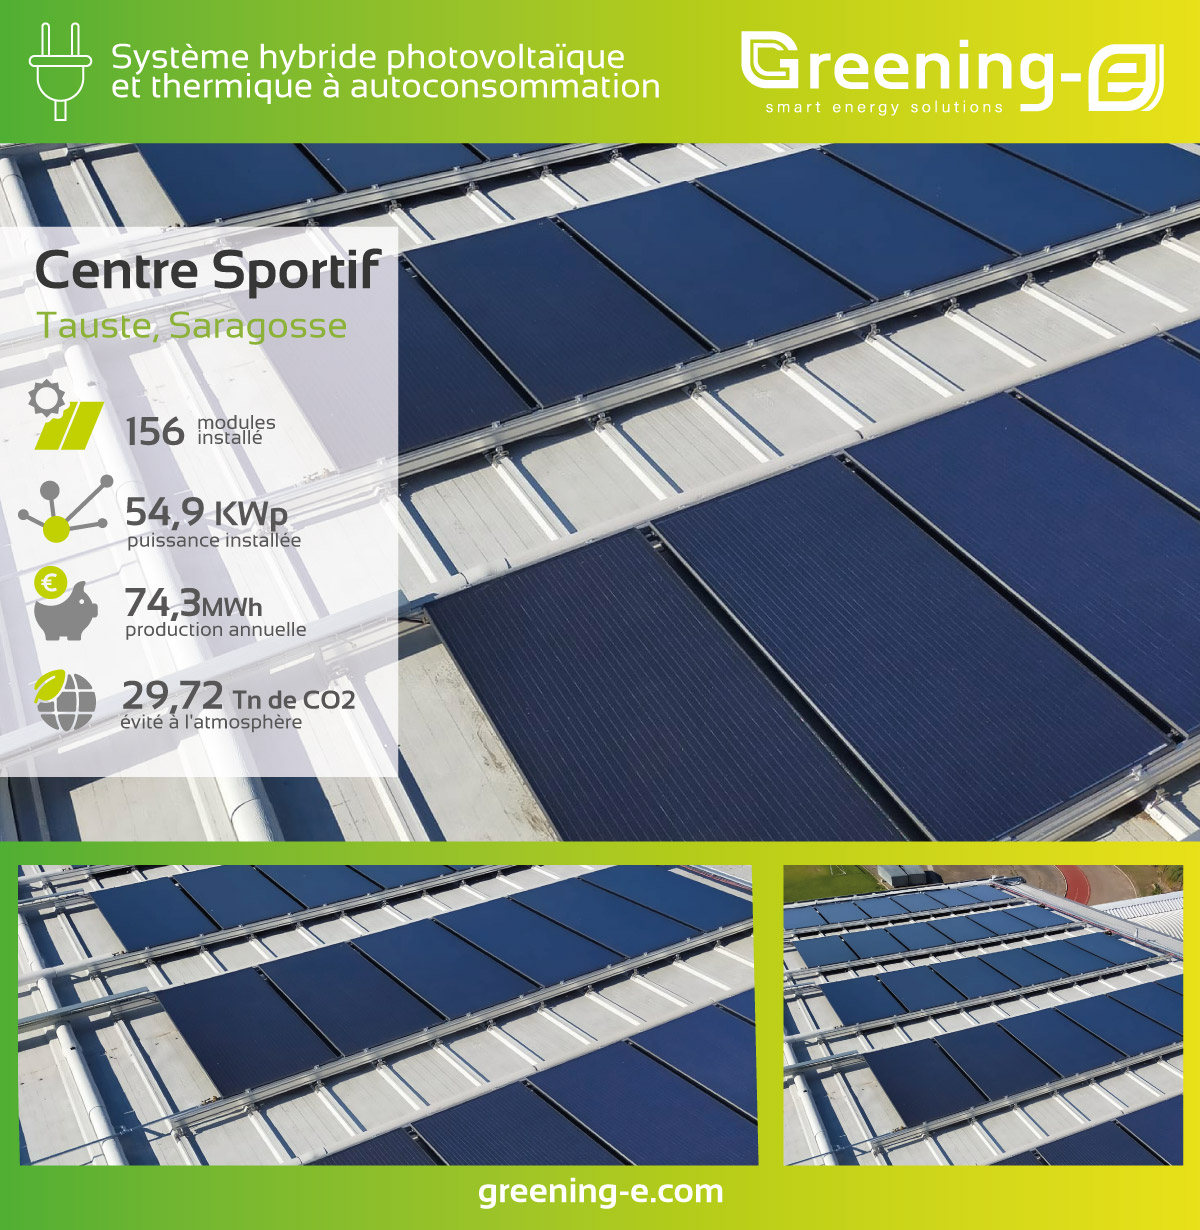 Installations Greening-e : Installation de panneaux hybrides dans le centre sportif de Tauste.